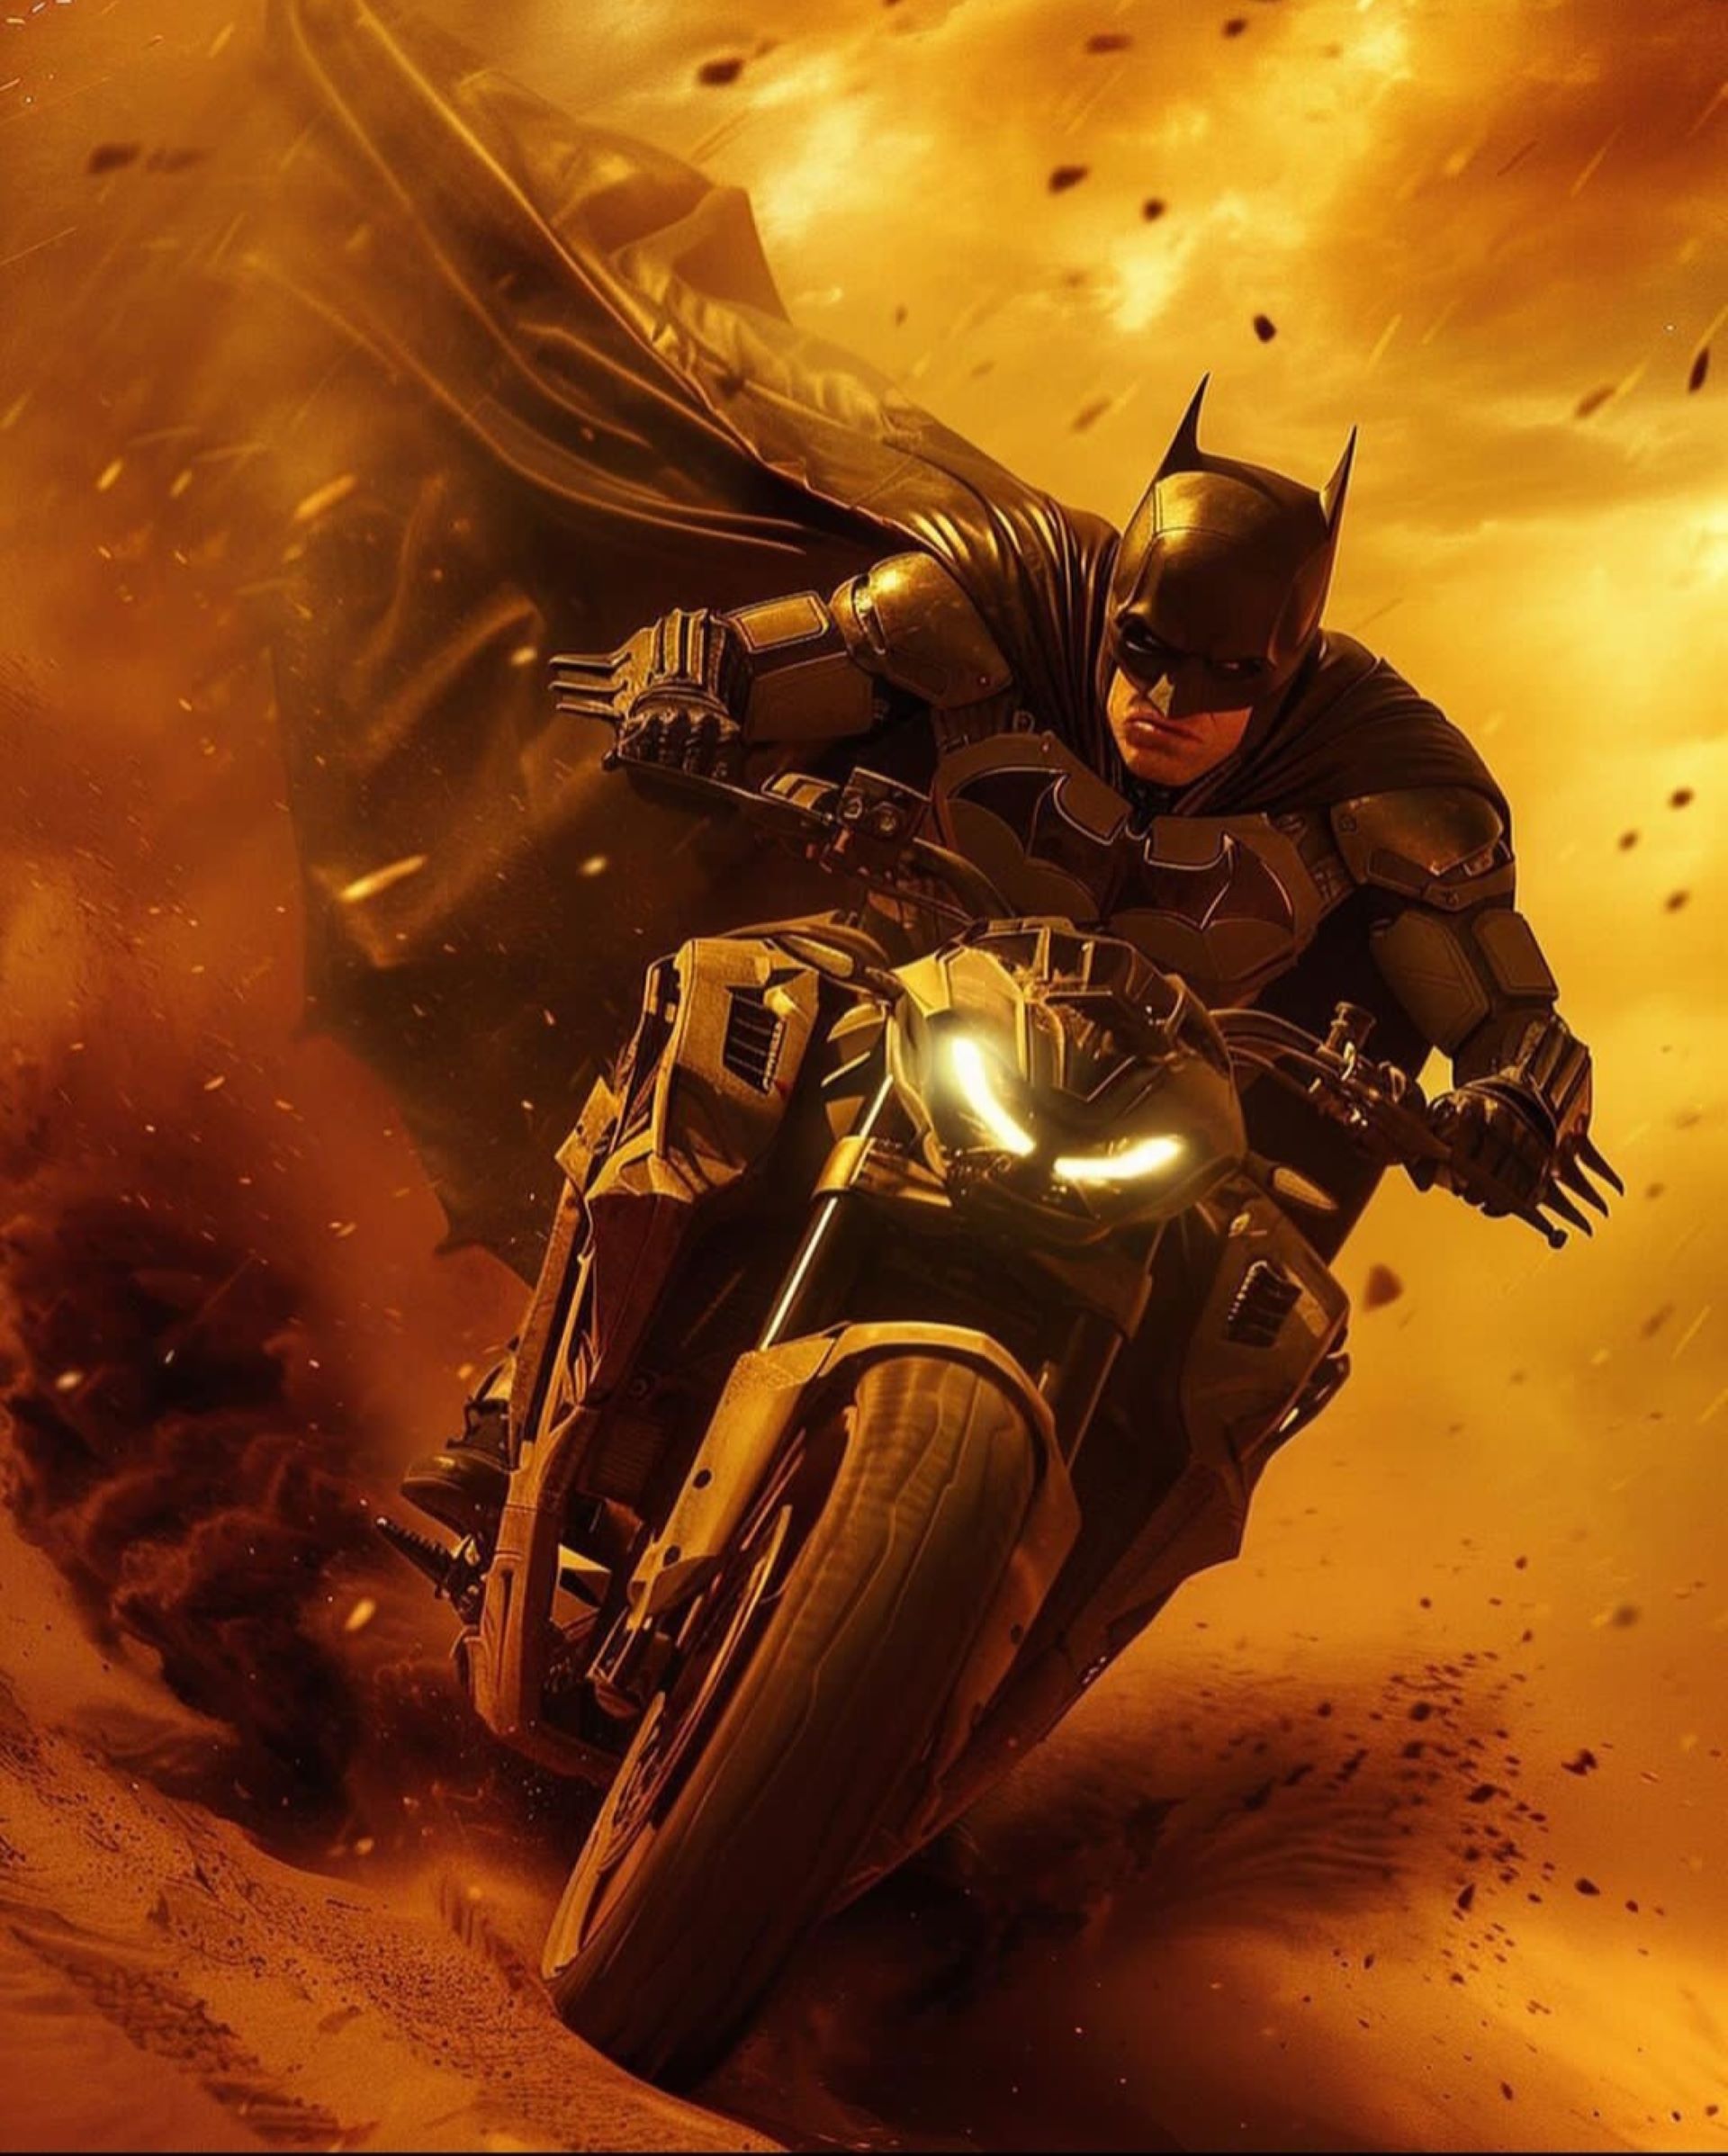 Batman on a motorcycle